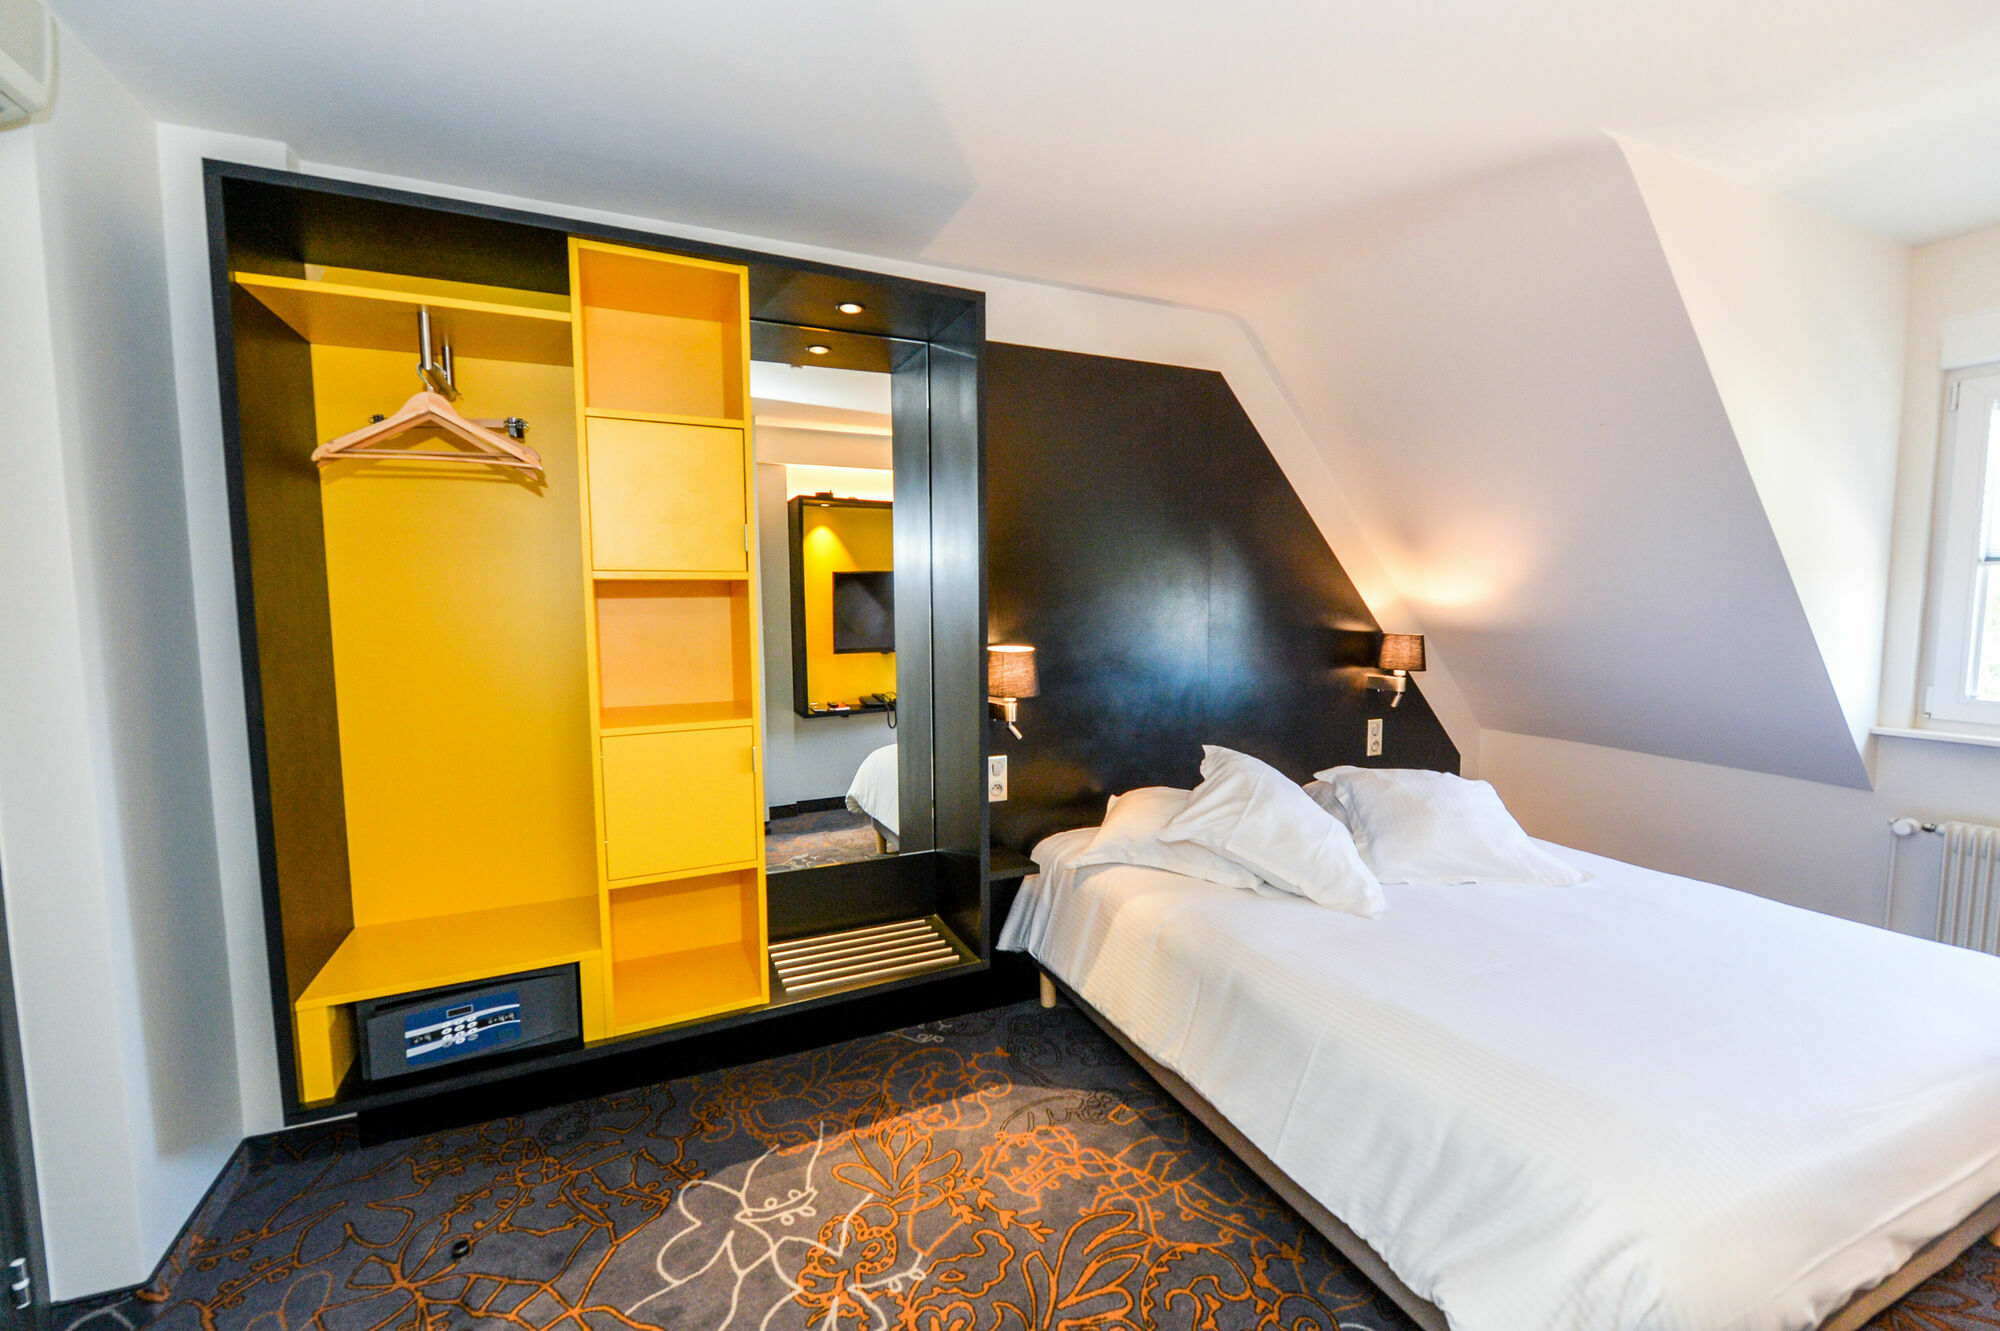 Europe Haguenau - Hotel & Spa Room photo